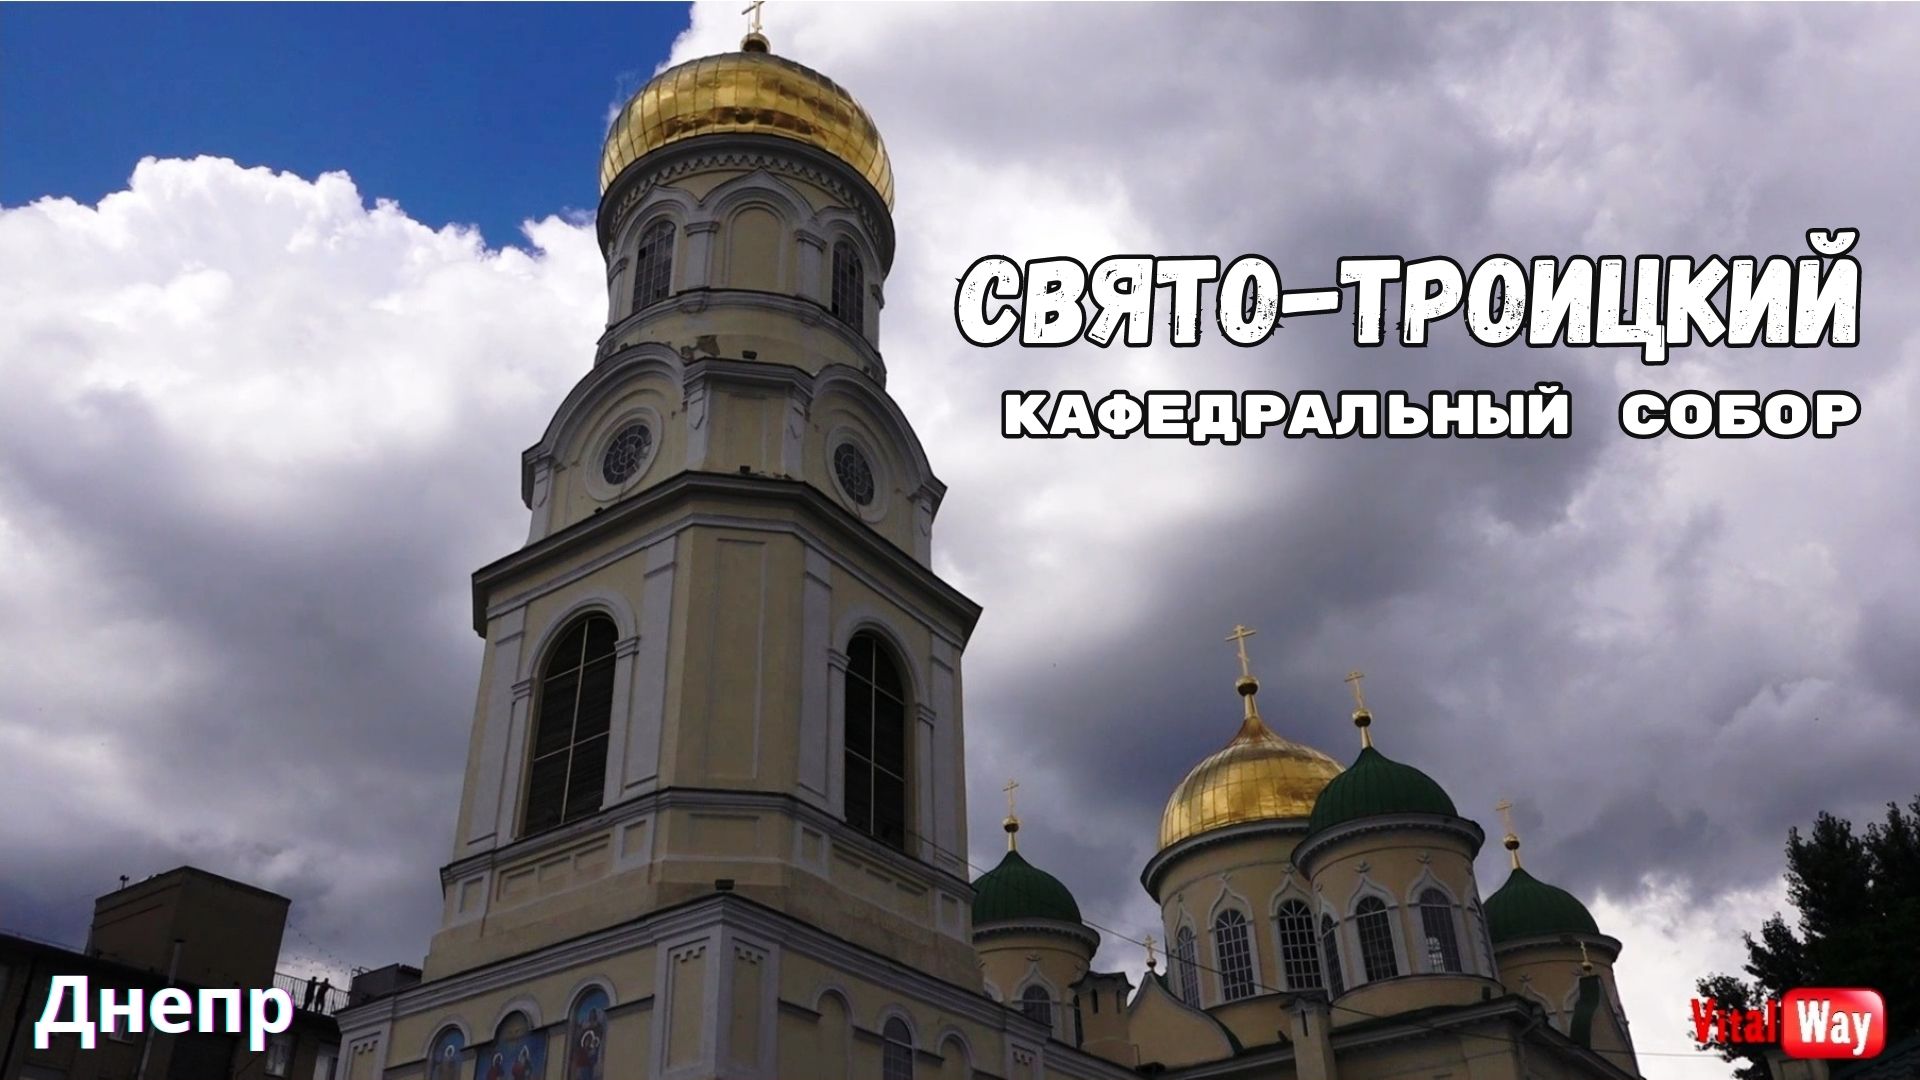 Троицкая церковь Днепропетровска / Свято-Троицкий Кафедральный Собор